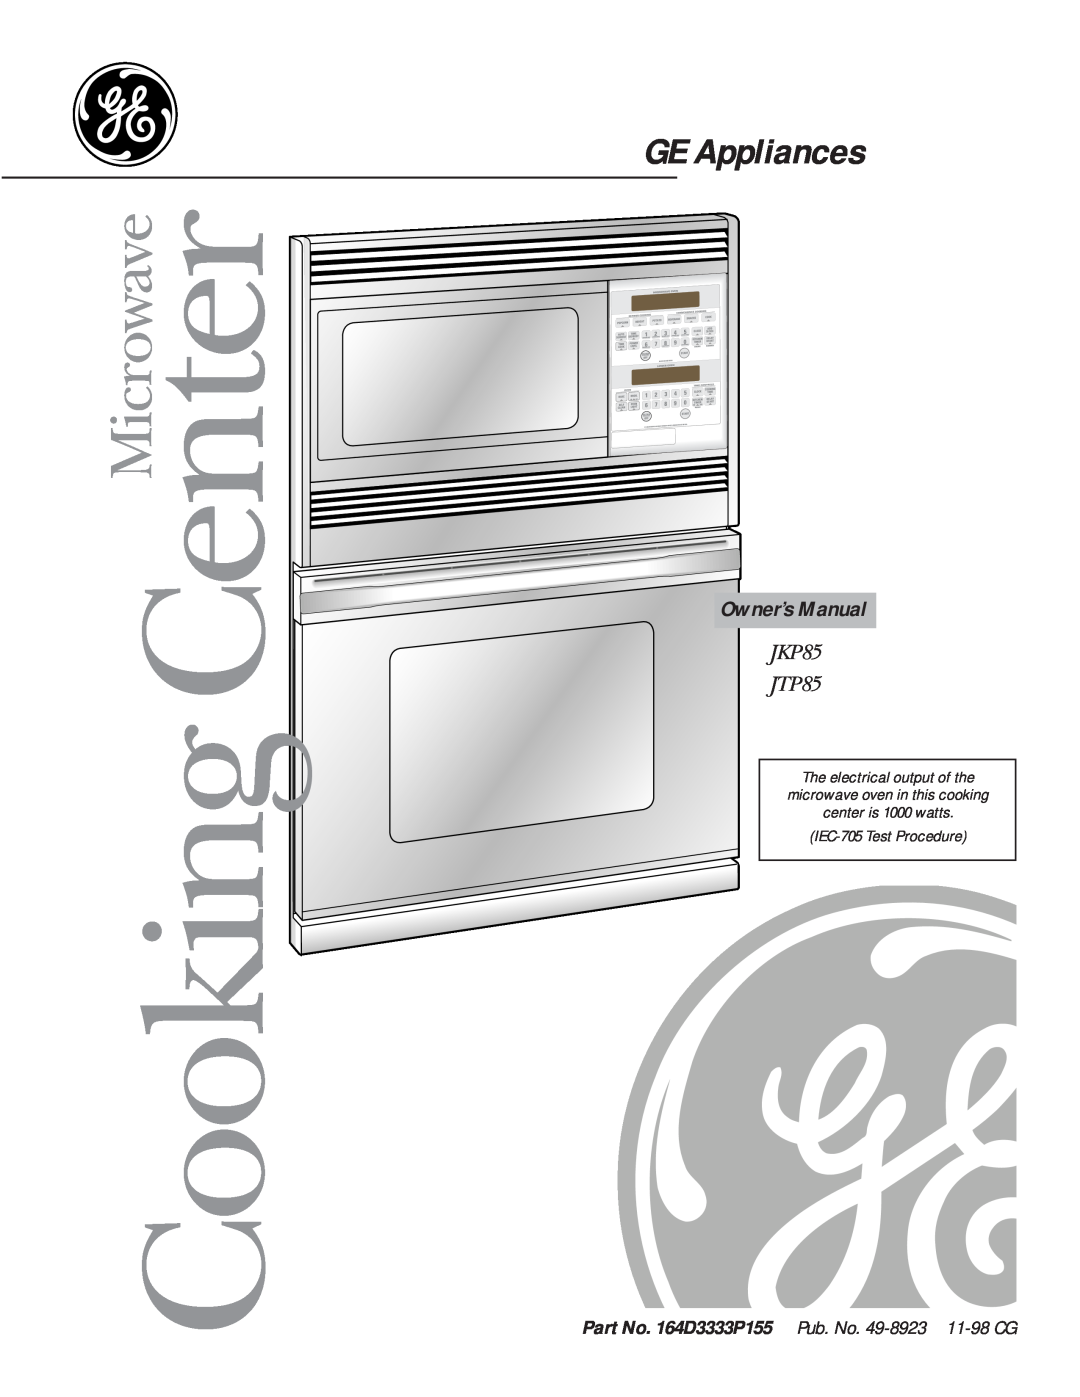 GE manual Part No. 164D3333P155 Pub. No. 49-8923 11-98CG, GE Appliances, Cooking Center, JKP85 JTP85, Microwave 